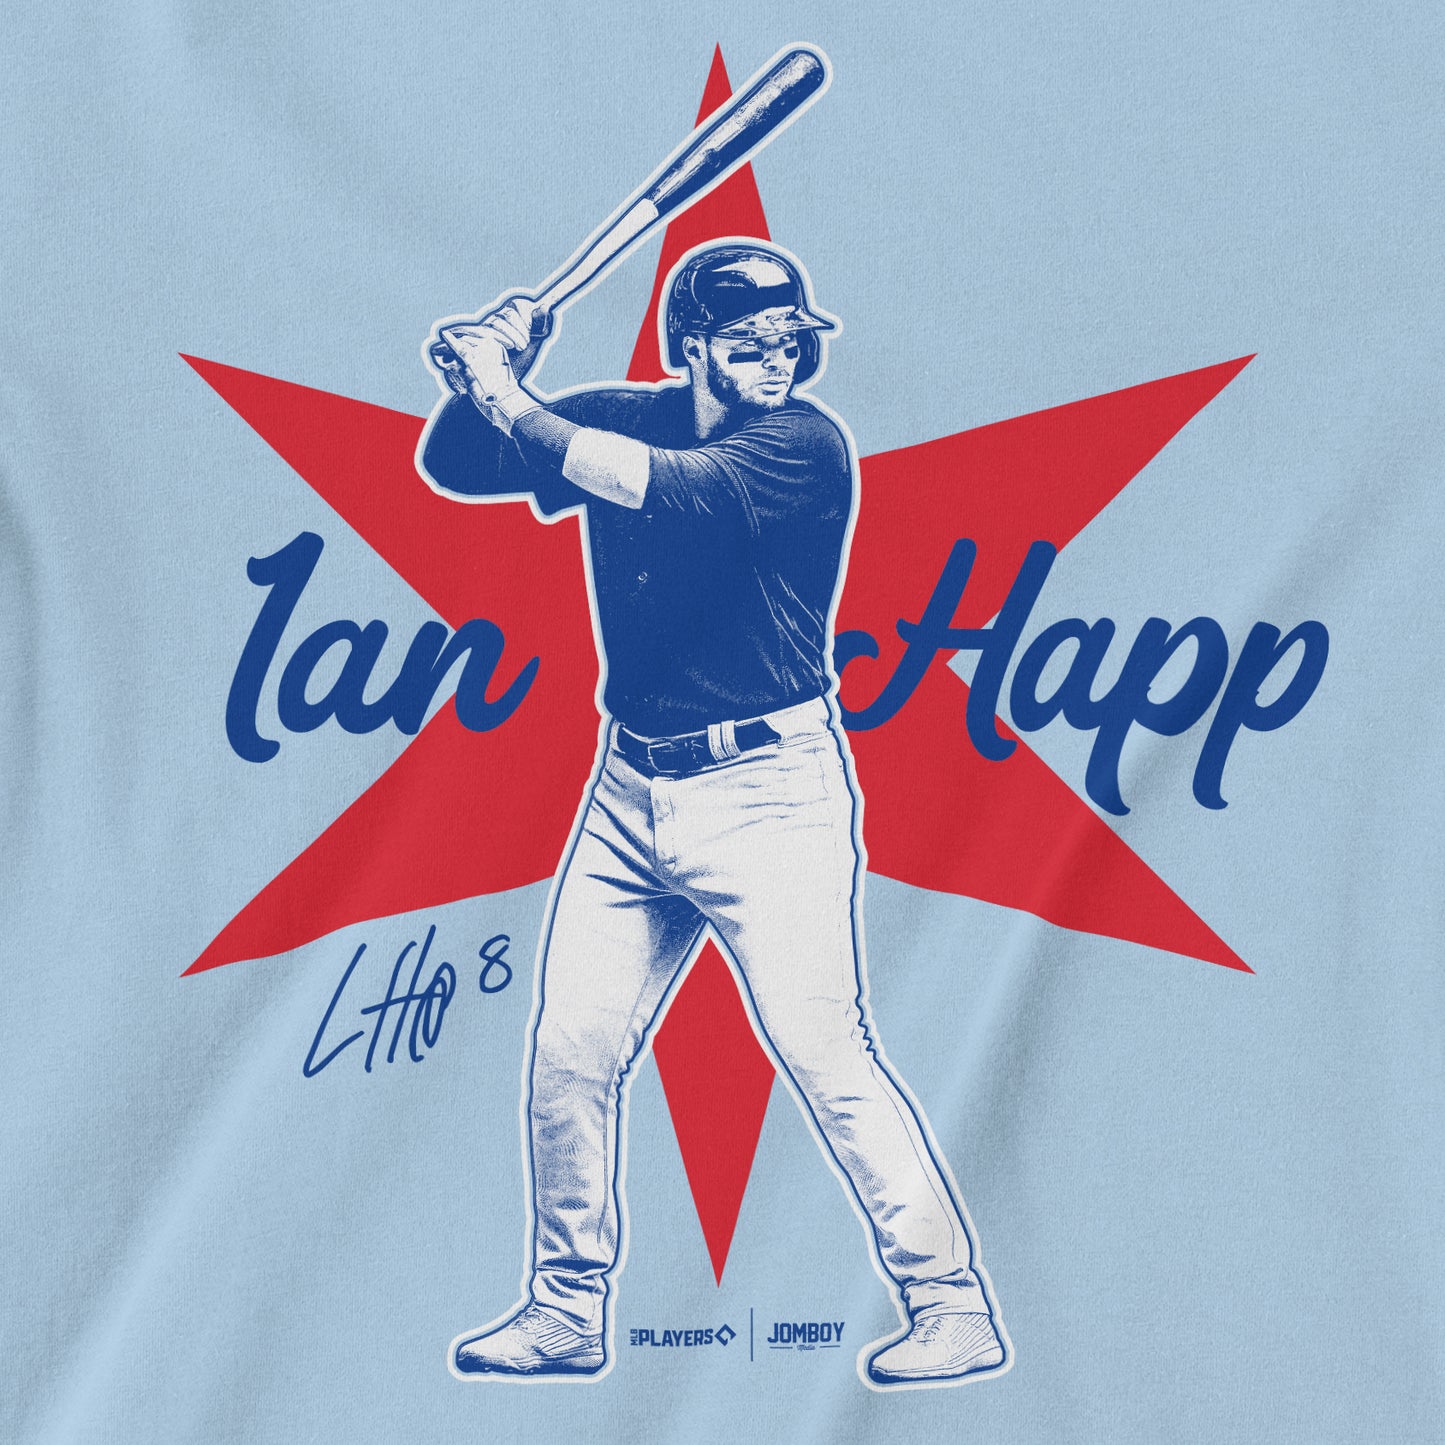 Ian Happ Signature Series | T-Shirt